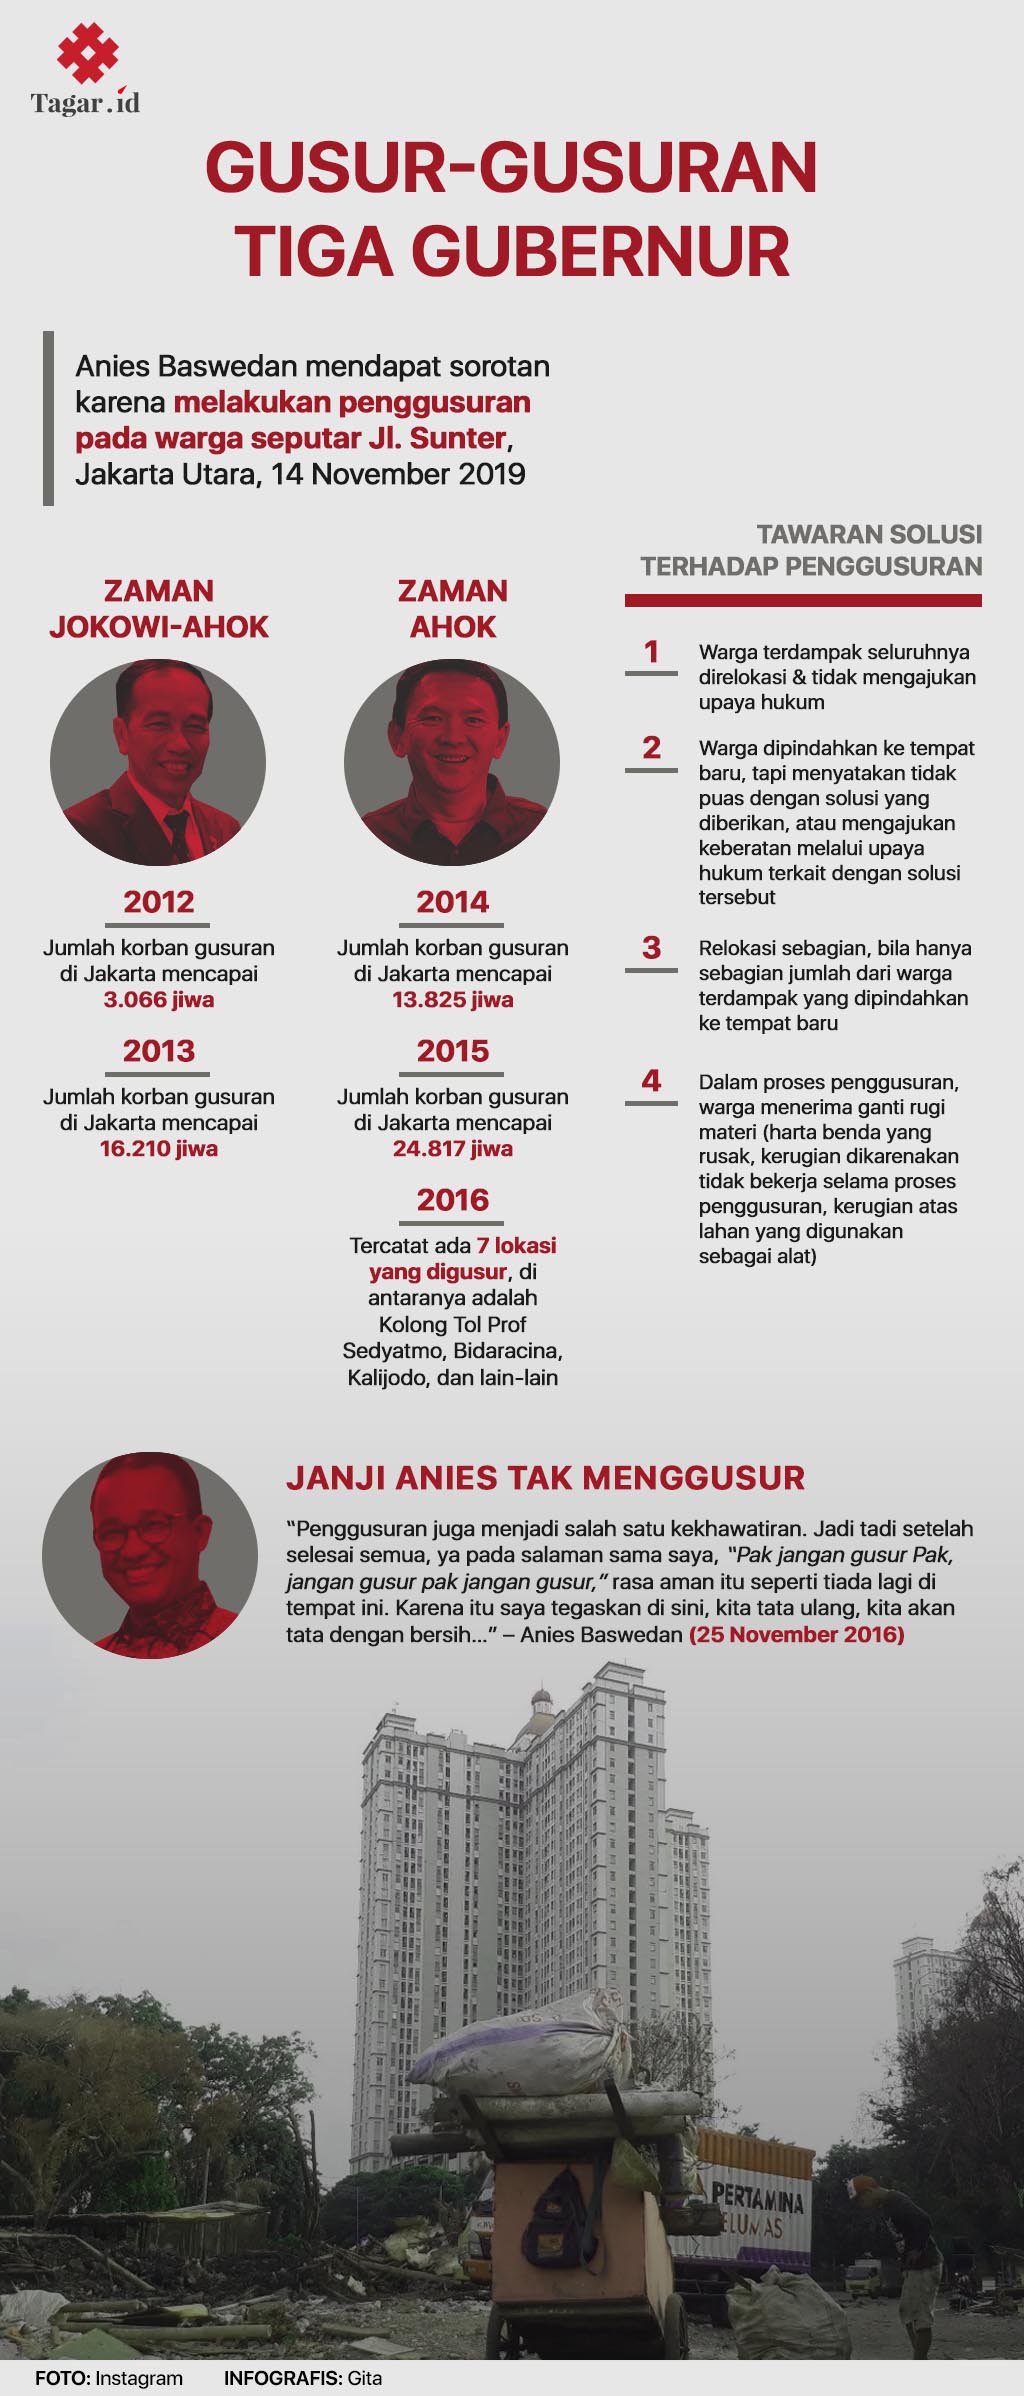 Infografis Gusur-gusuran Tiga Gubernur